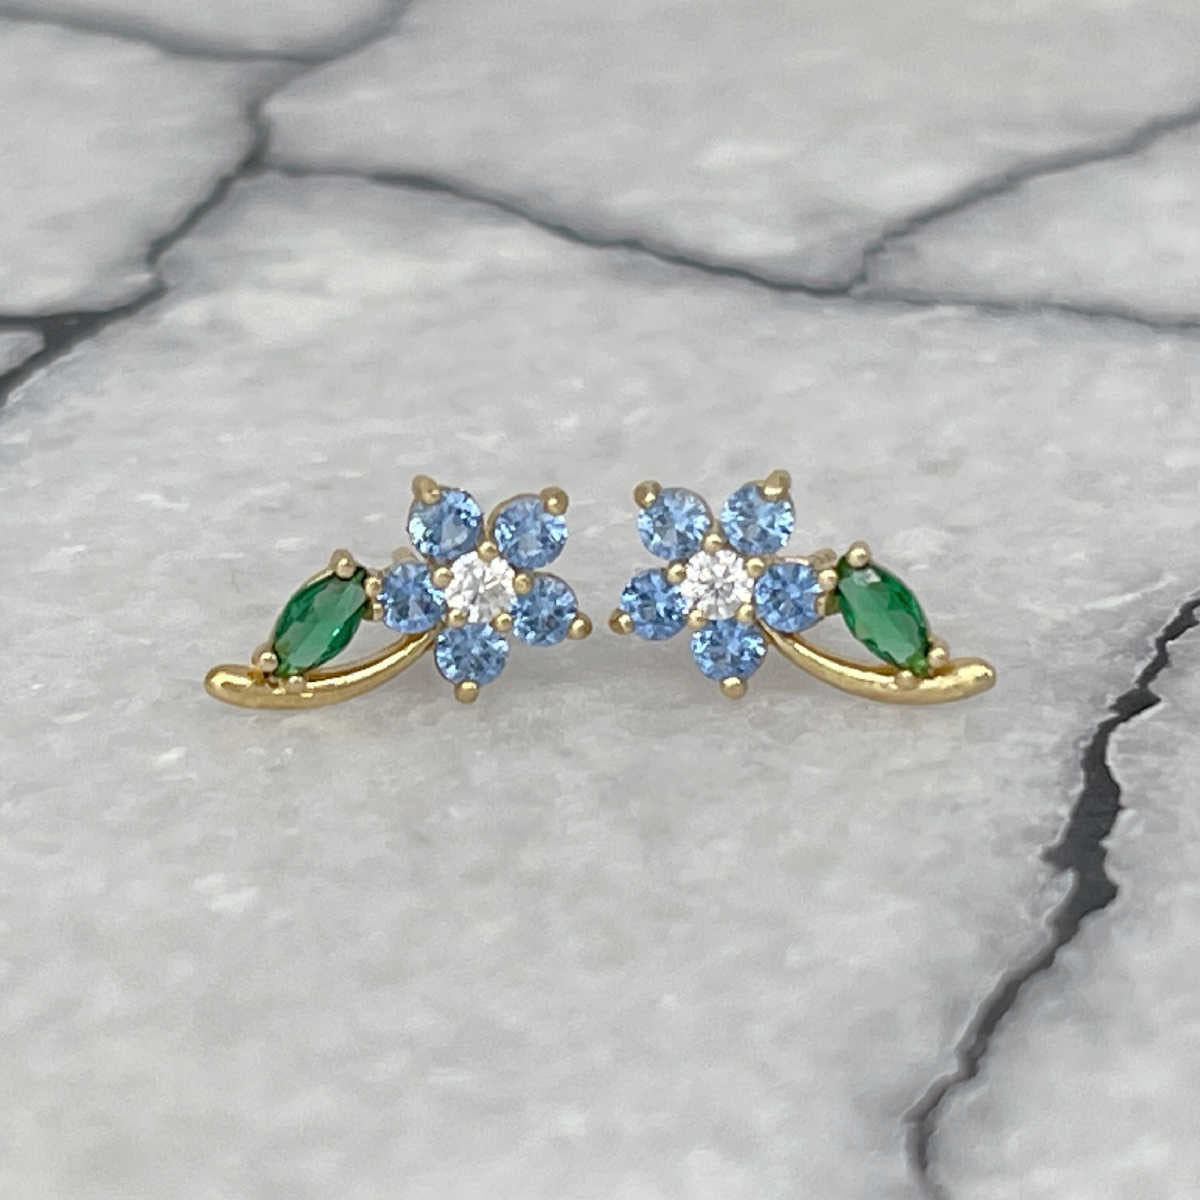 Blue Flower Earrings, 14K Gold & Gemstone Studs, Two of Most Fine Jewelry